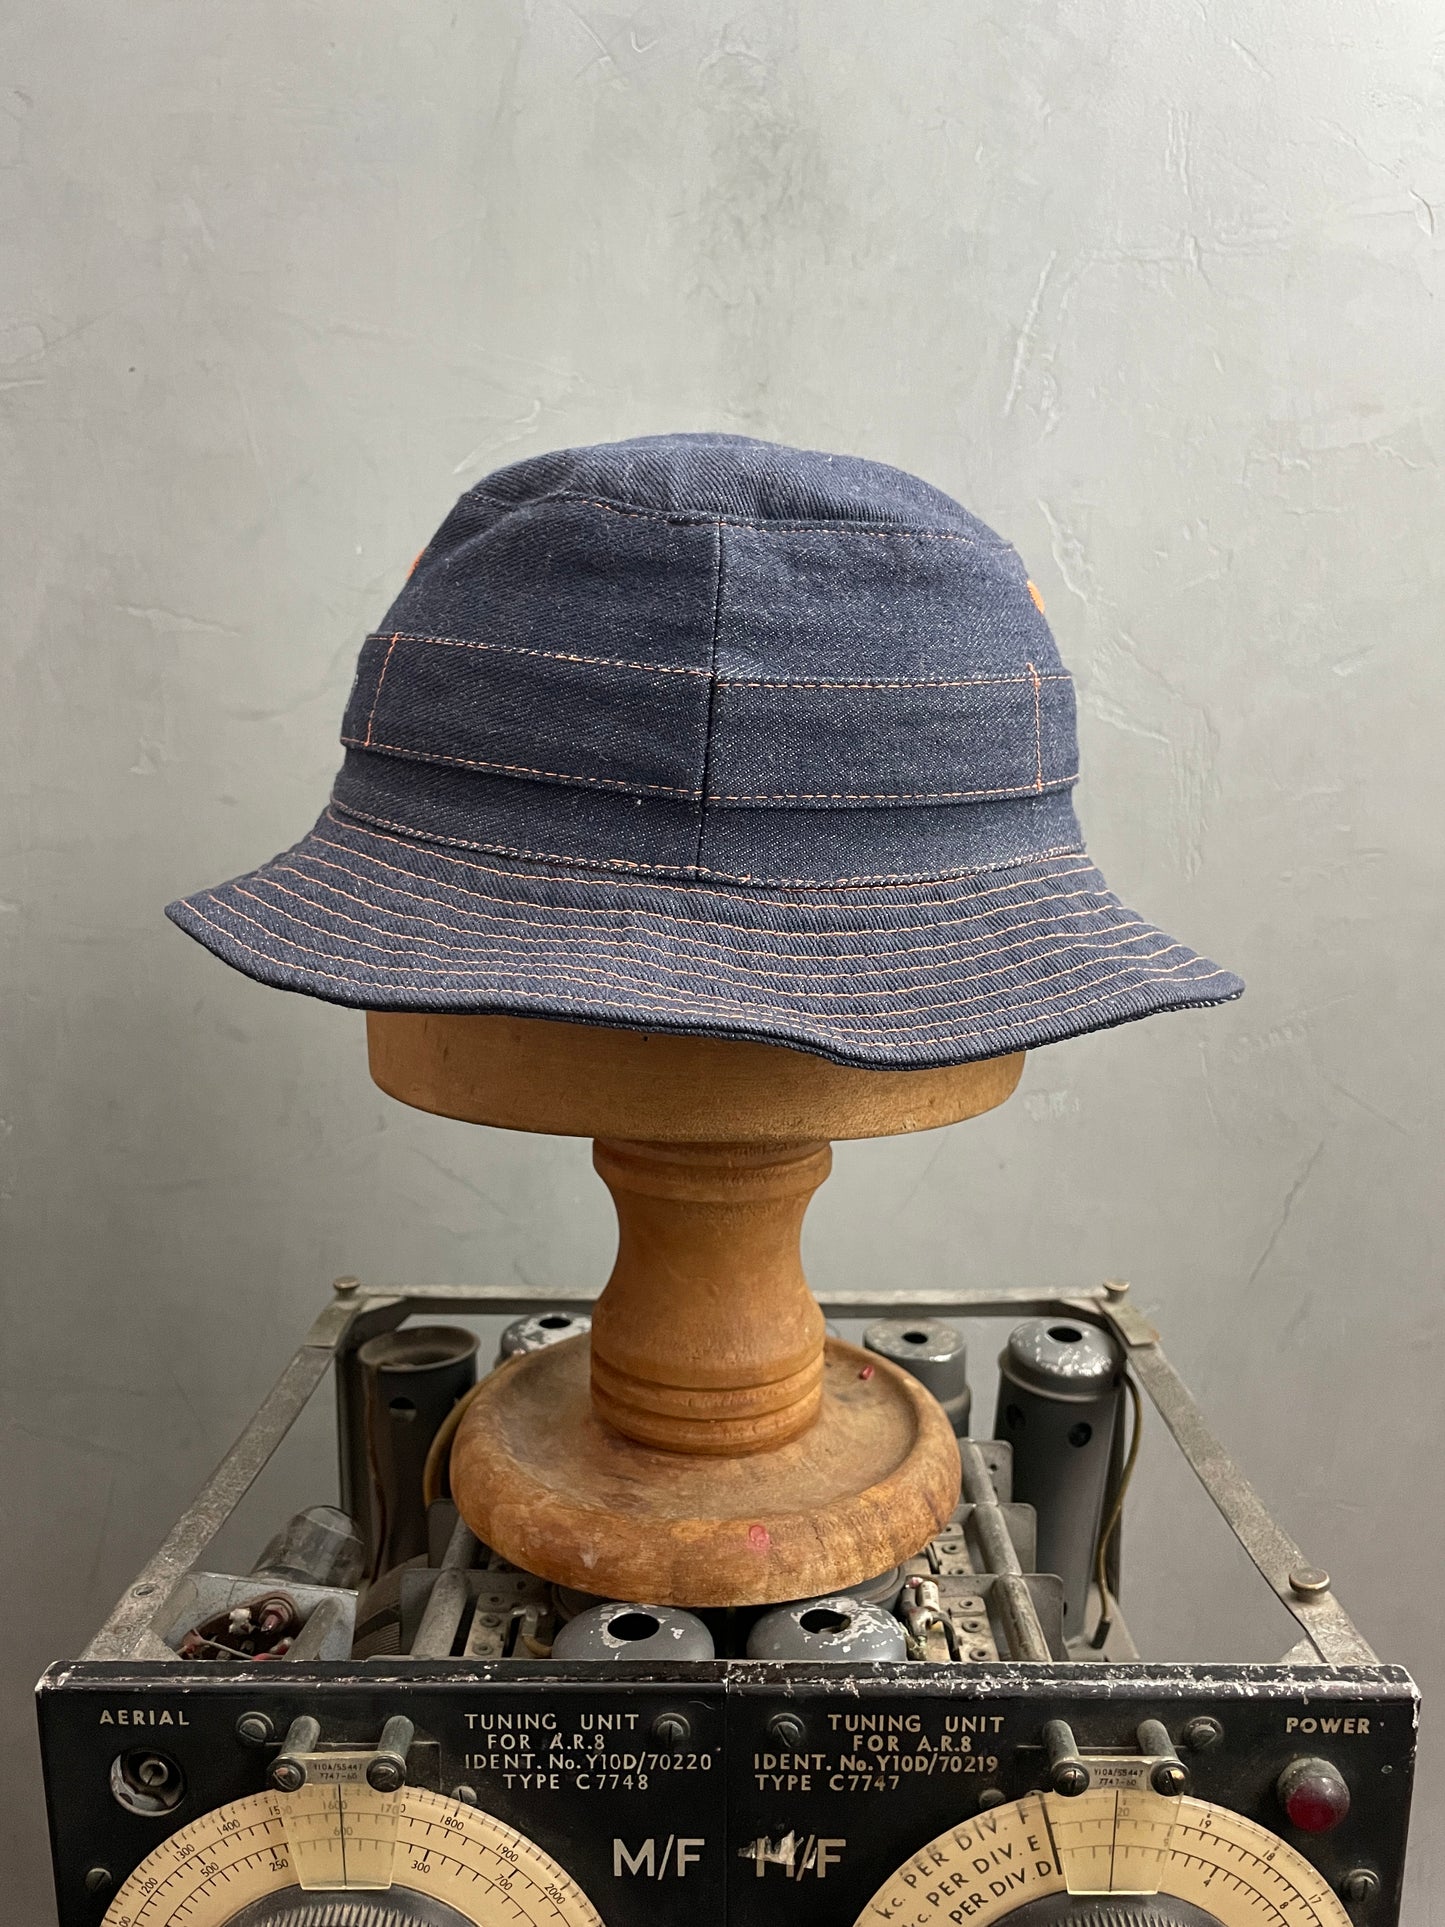 Renault Denim Bucket Hat